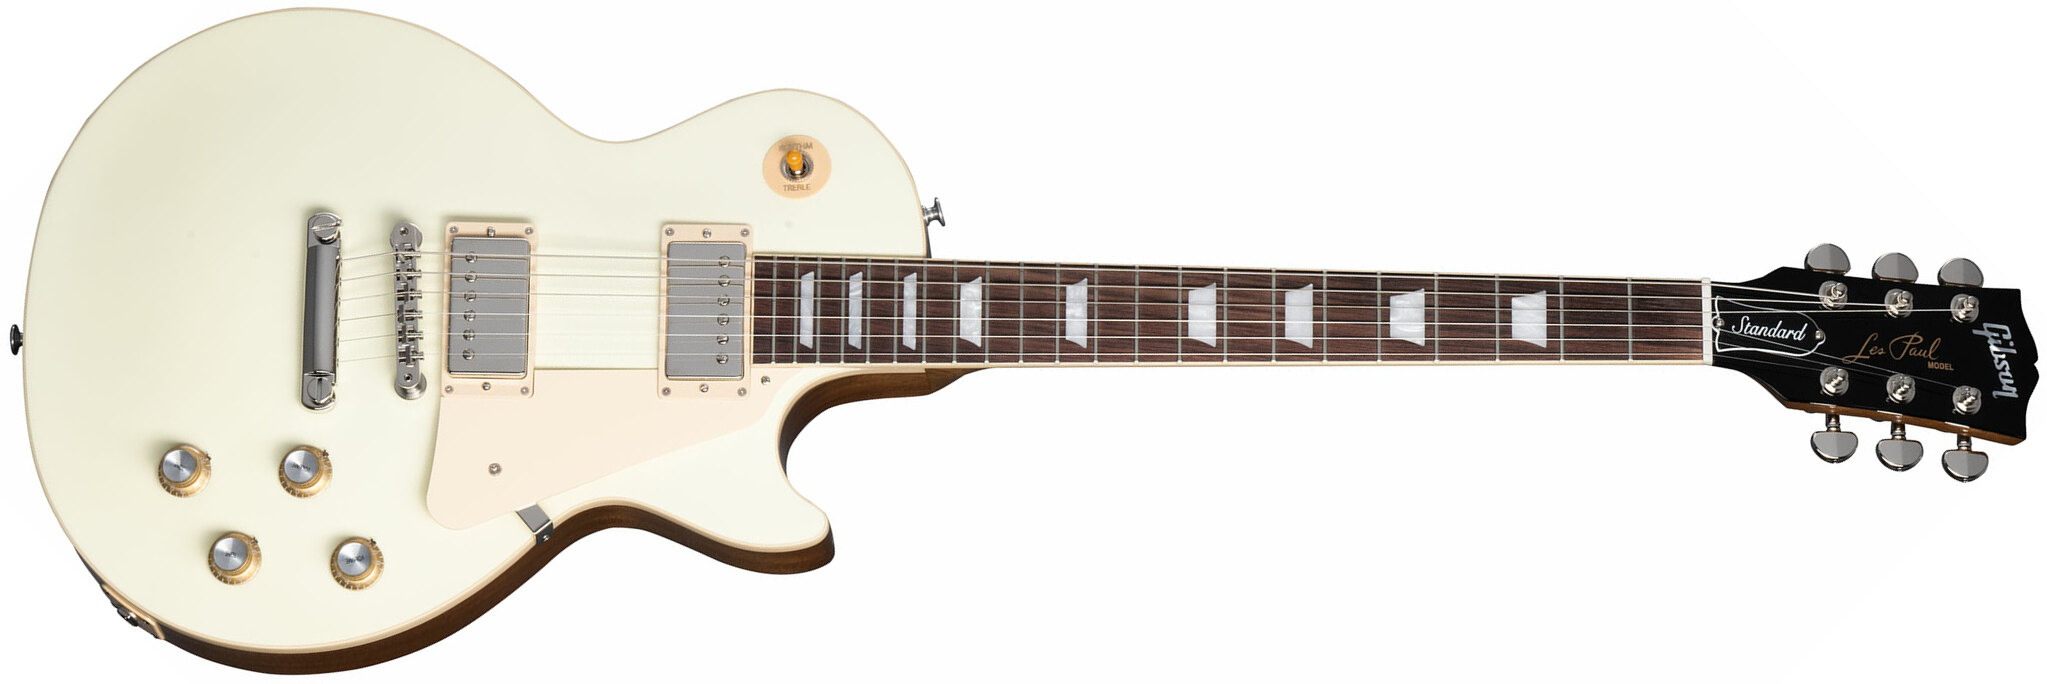 Gibson Les Paul Standard 60s Plain Top 2h Ht Rw - Classic White - Guitarra eléctrica de corte único. - Main picture